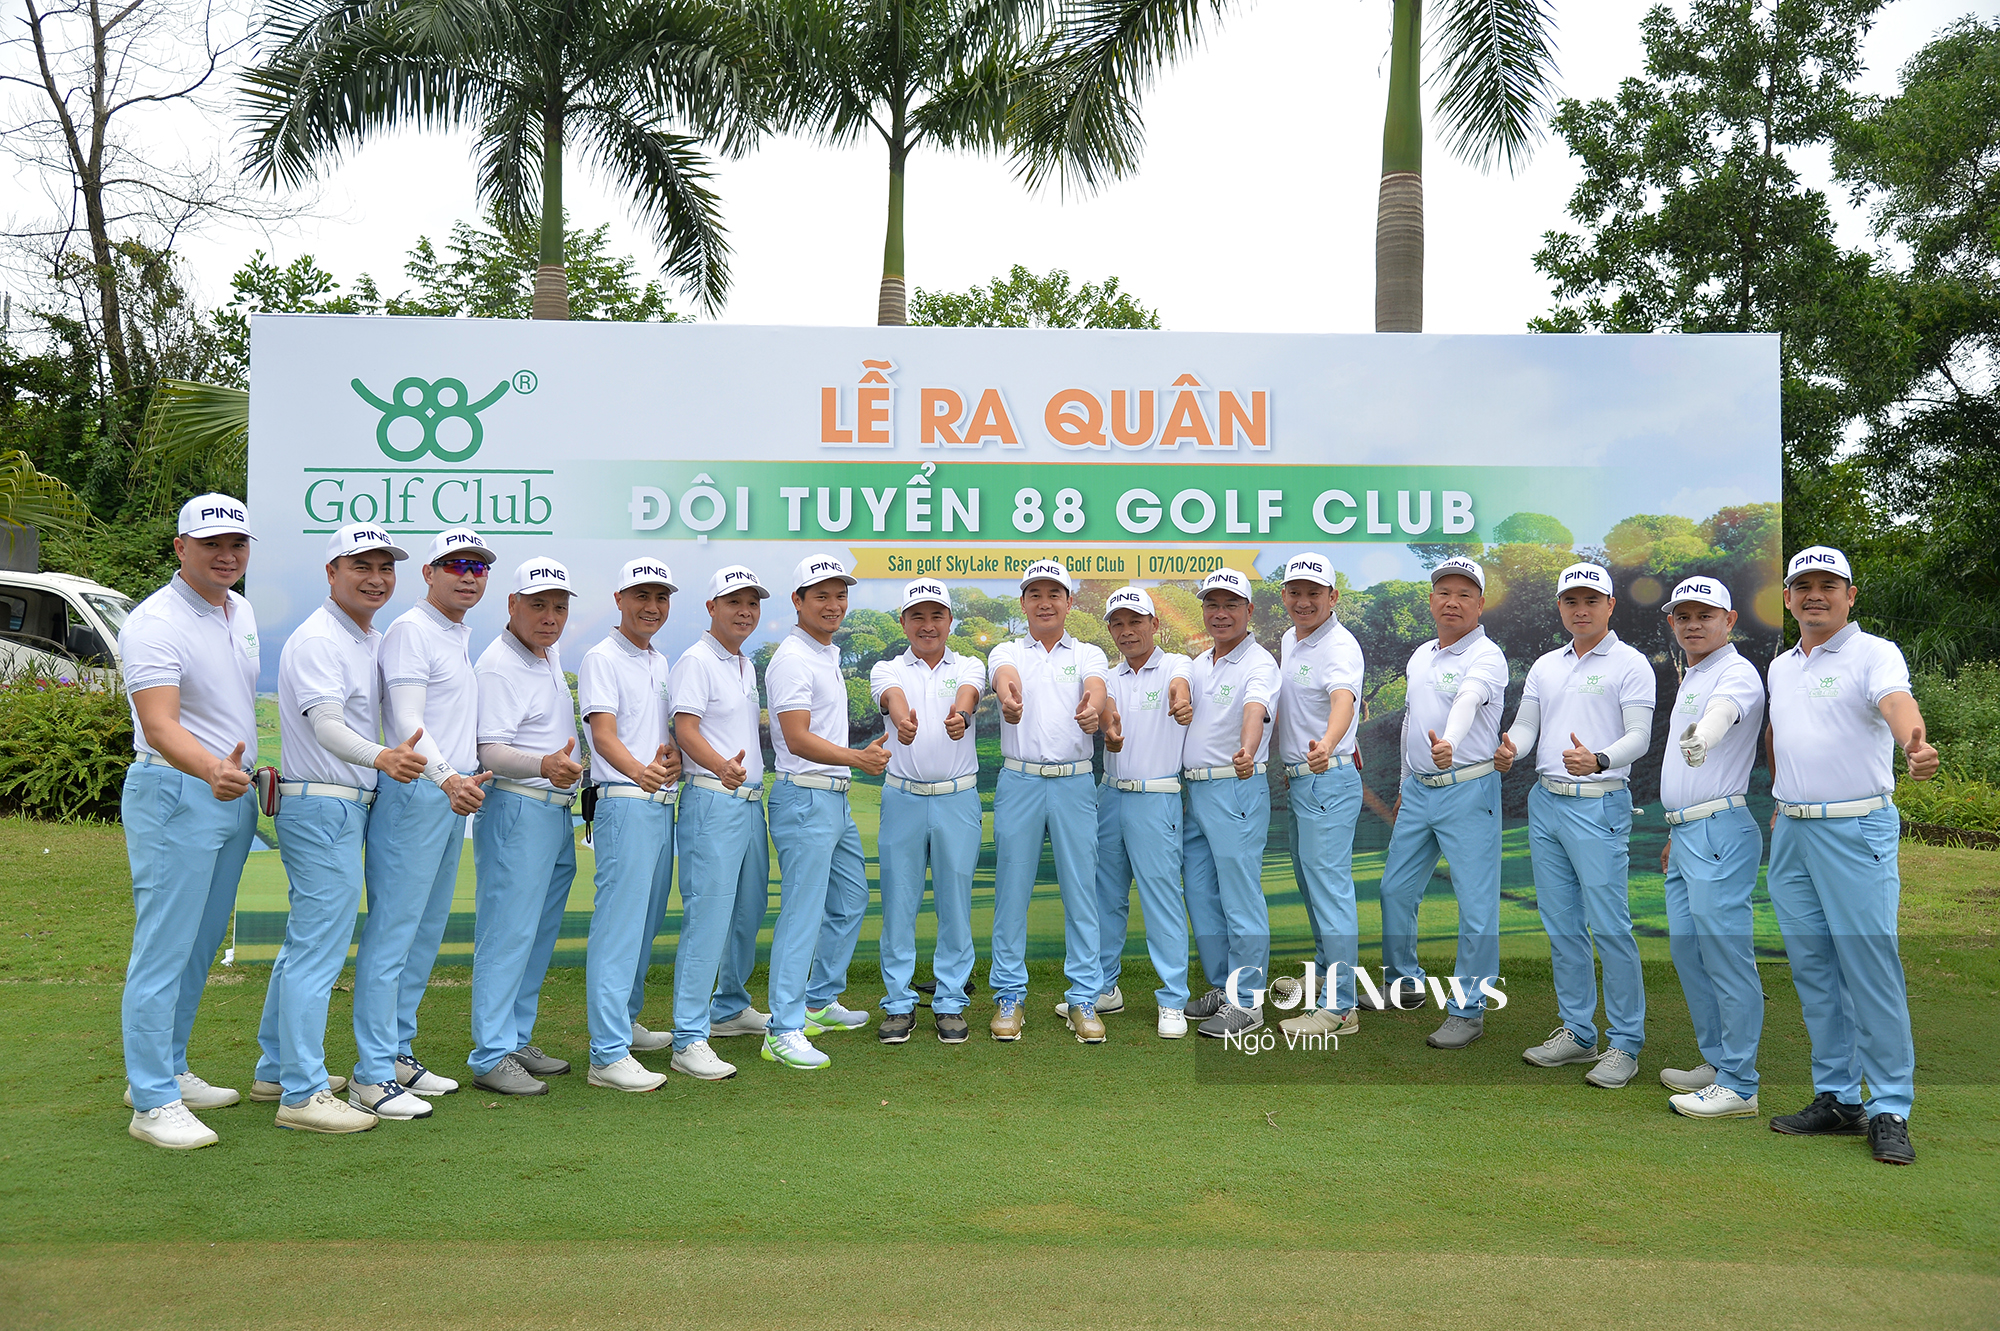 CLB 88 Golf Club xuất quân sẵn sàng “tham chiến” giải Vô địch các CLB golf Hà Nội lần thứ 4 – Fastee Cup